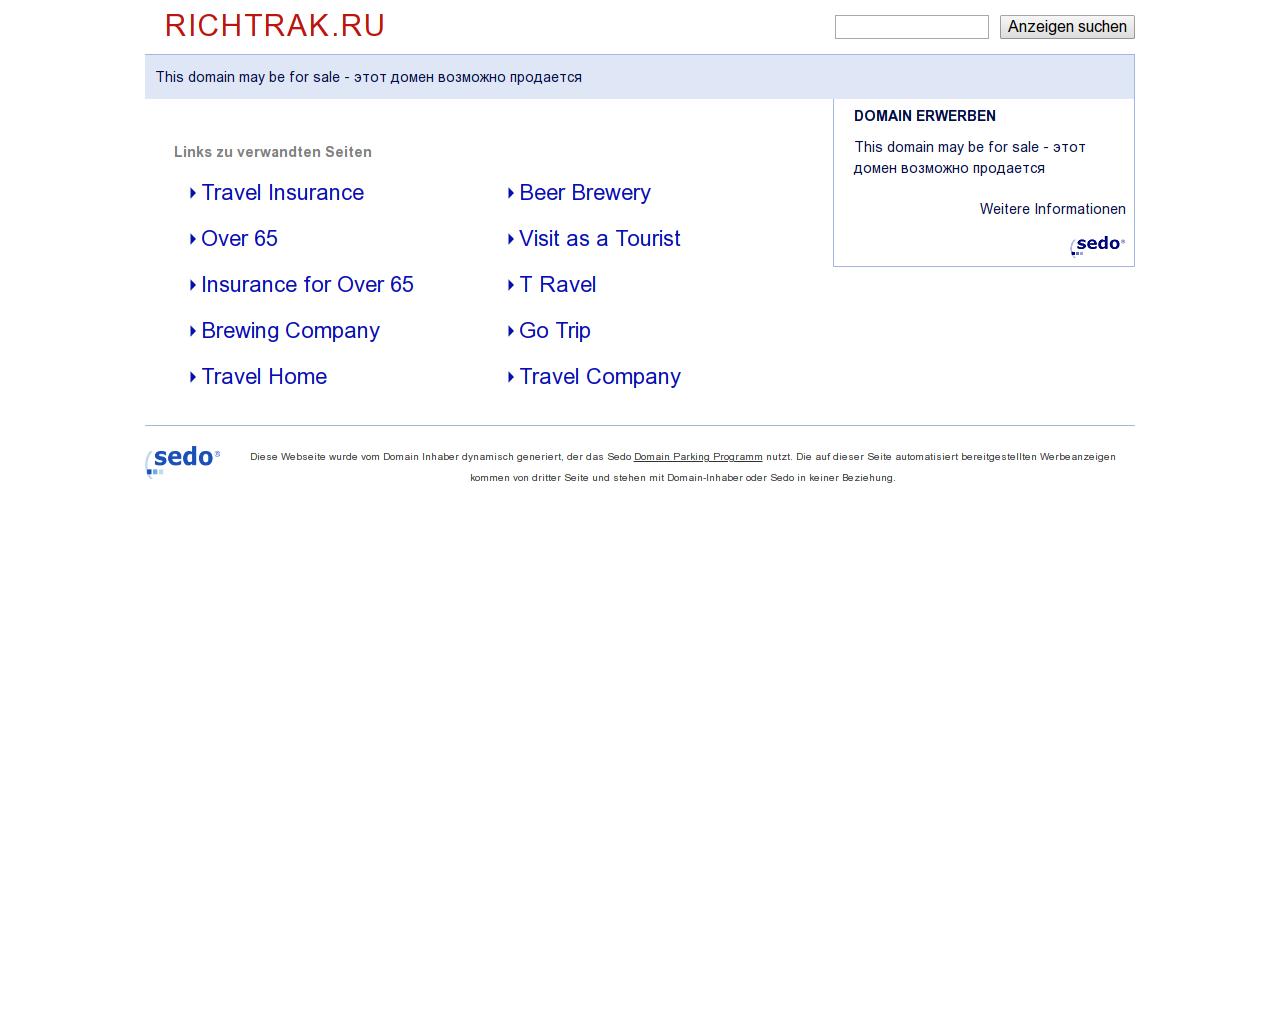 Изображение сайта richtrak.ru в разрешении 1280x1024